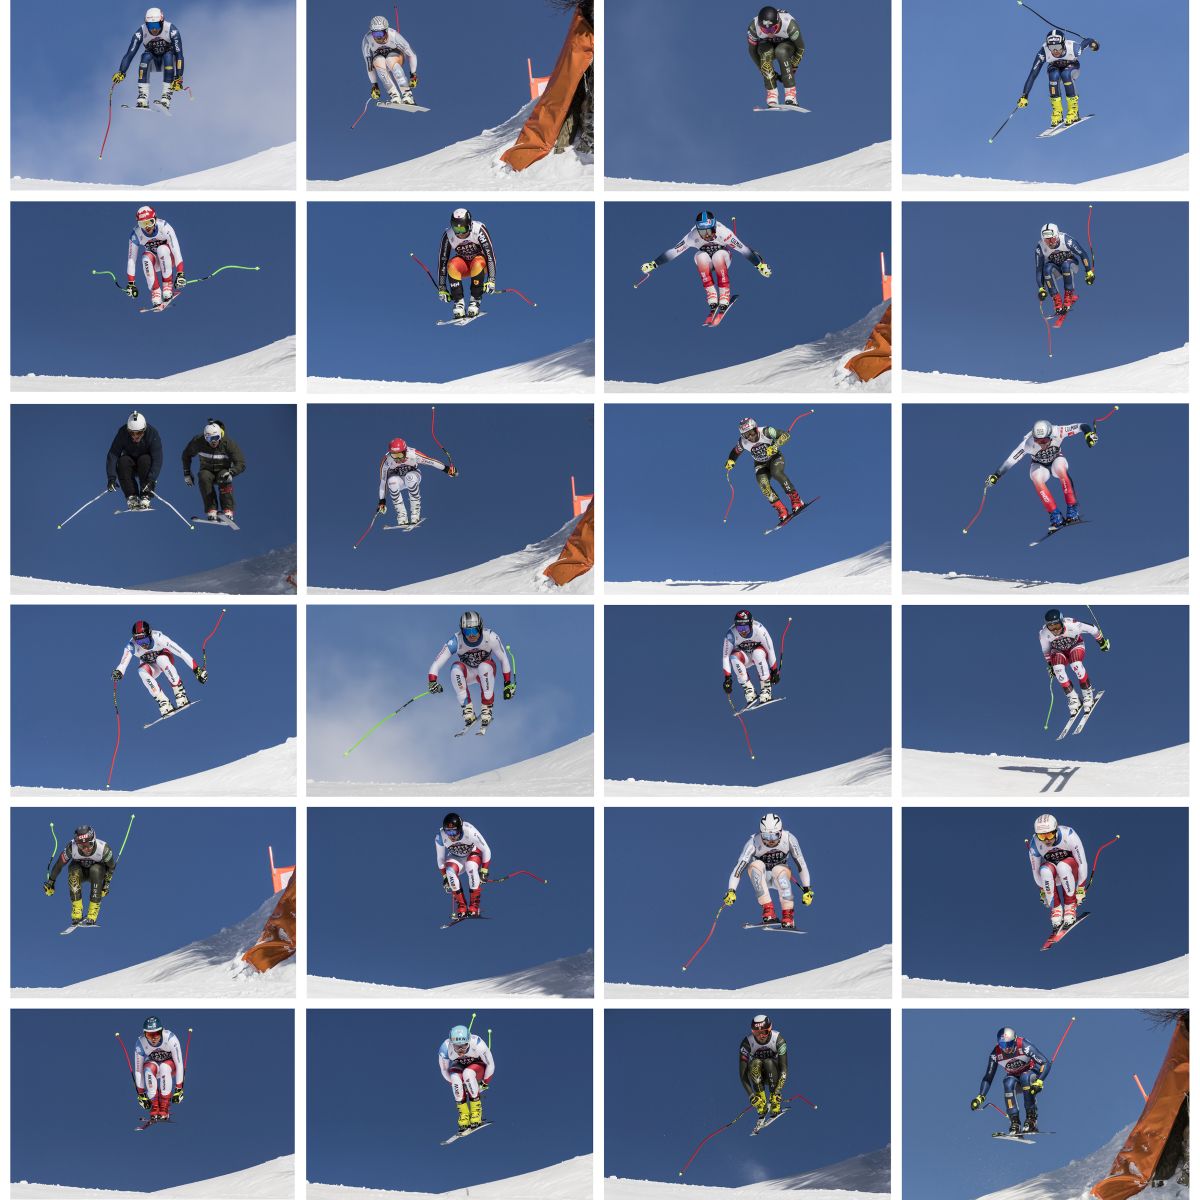 Der Sprung der Skirennfahrer über den Hundschopf am Lauberhornrennen 2020: Beat Feuz (4. Reihe, 3. von links), Carlo Janka (2. Reihe, links), die beiden Kamerafahrer des Schweizer Fernsehens SRF, Bruno Kernen und Marc Berthod (3. Reihe, links).